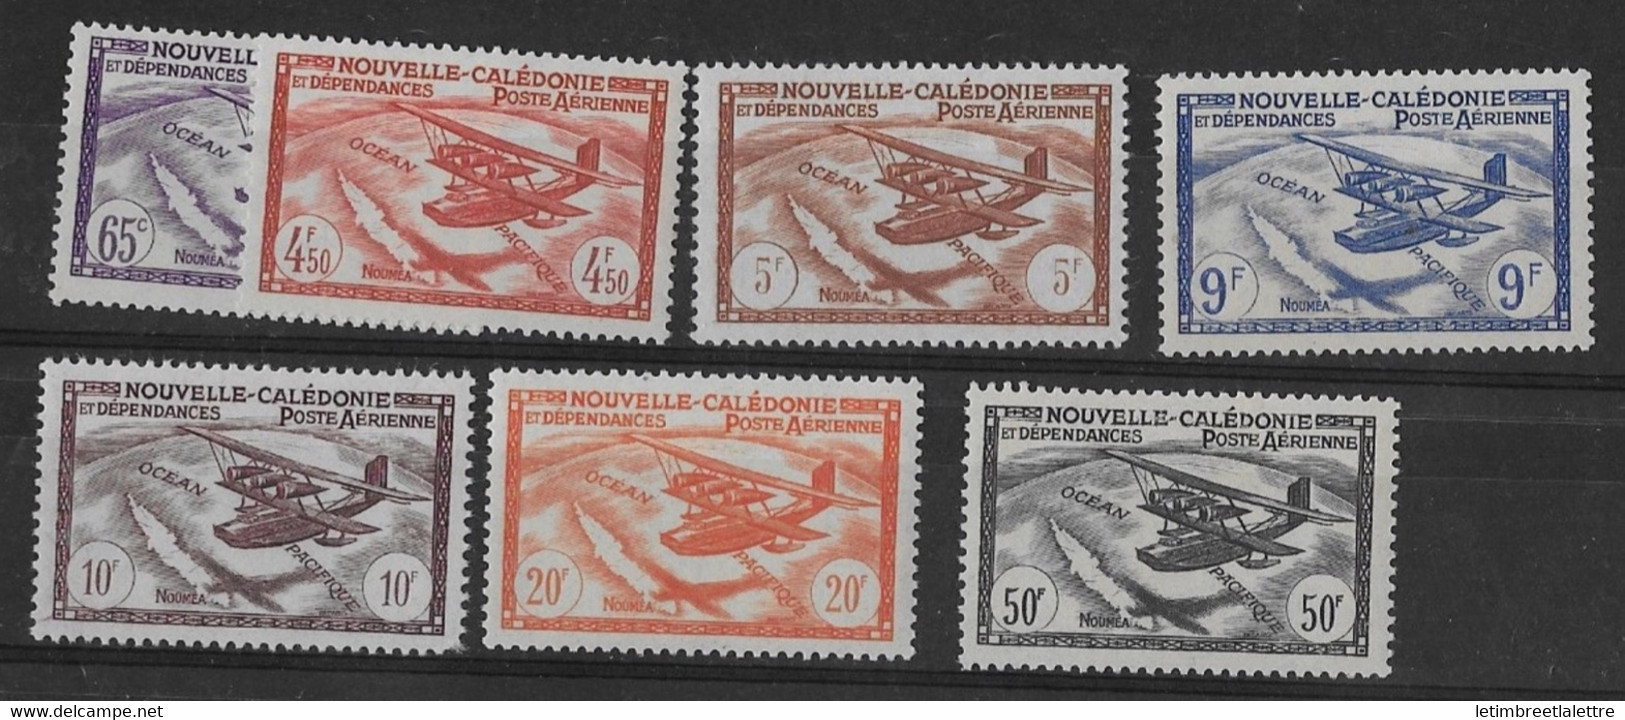 ⭐ Nouvelle Calédonie - Poste Aérienne - YT N° 39 à 45 ** - Neuf Sans Charnière - 1942 / 1943 ⭐ - Nuovi